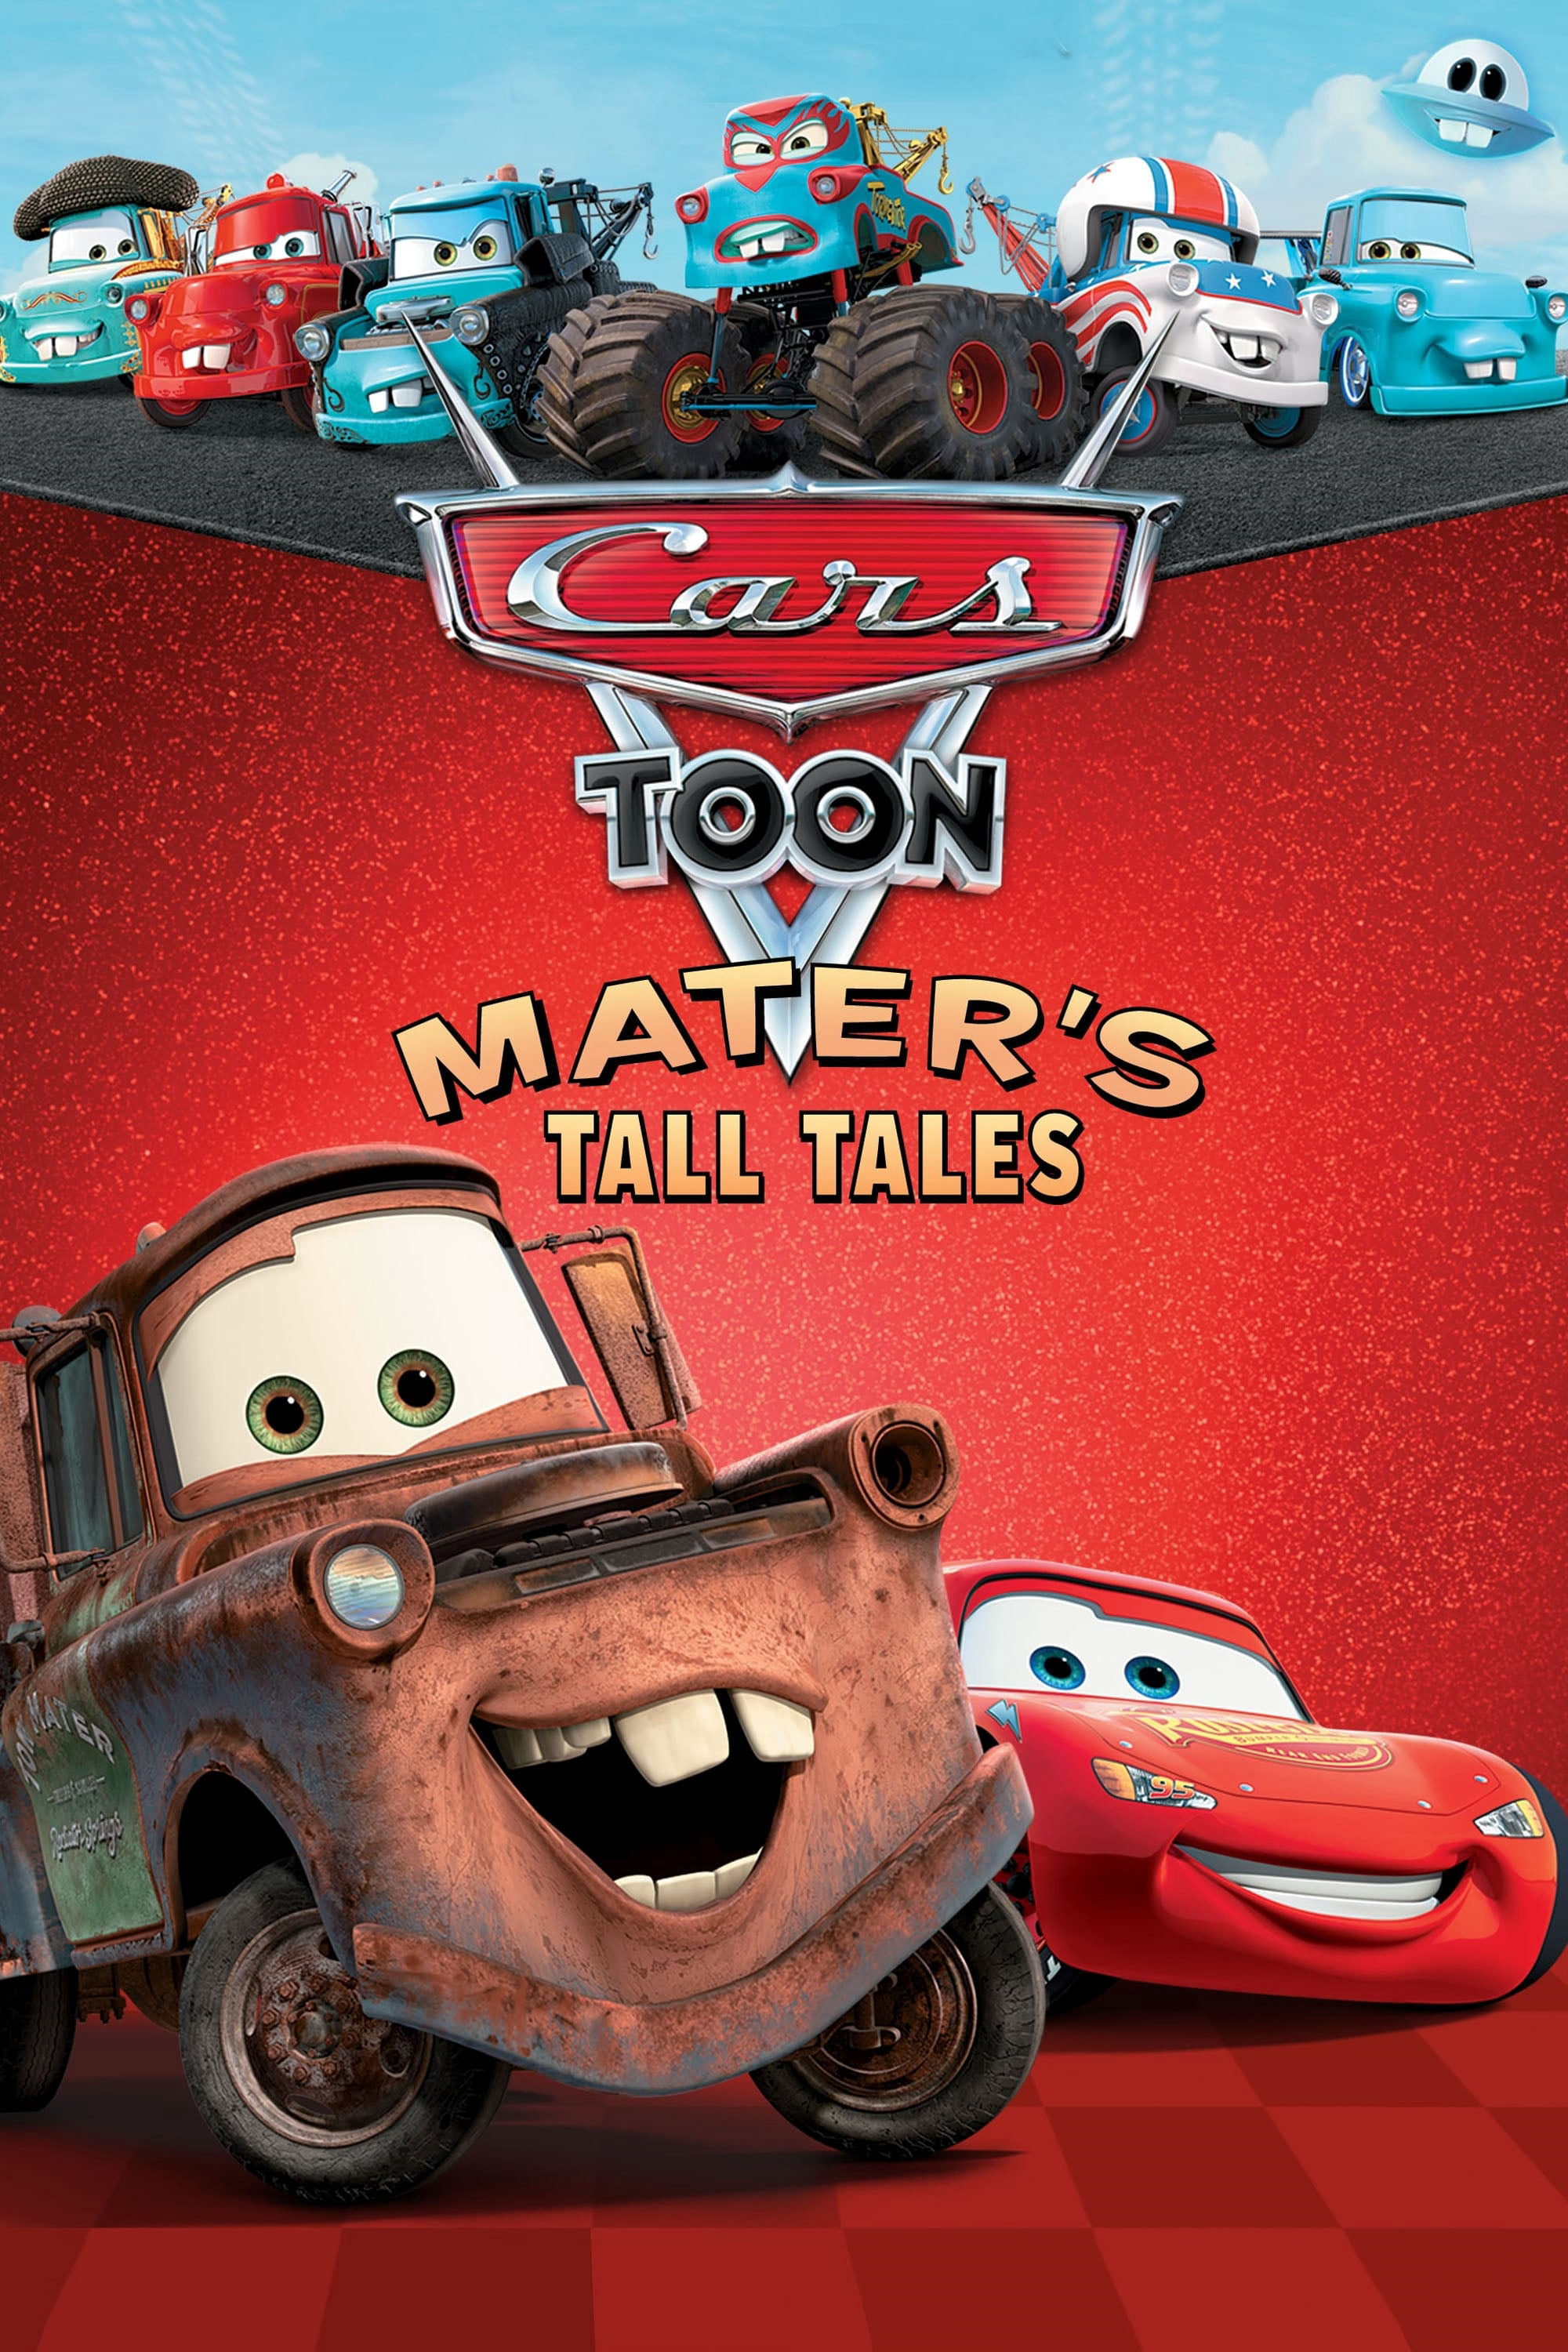 Xem Phim Vương Quốc Xe Hơi- Mater Chém Gió (Cars Toon Mater's Tall Tales)